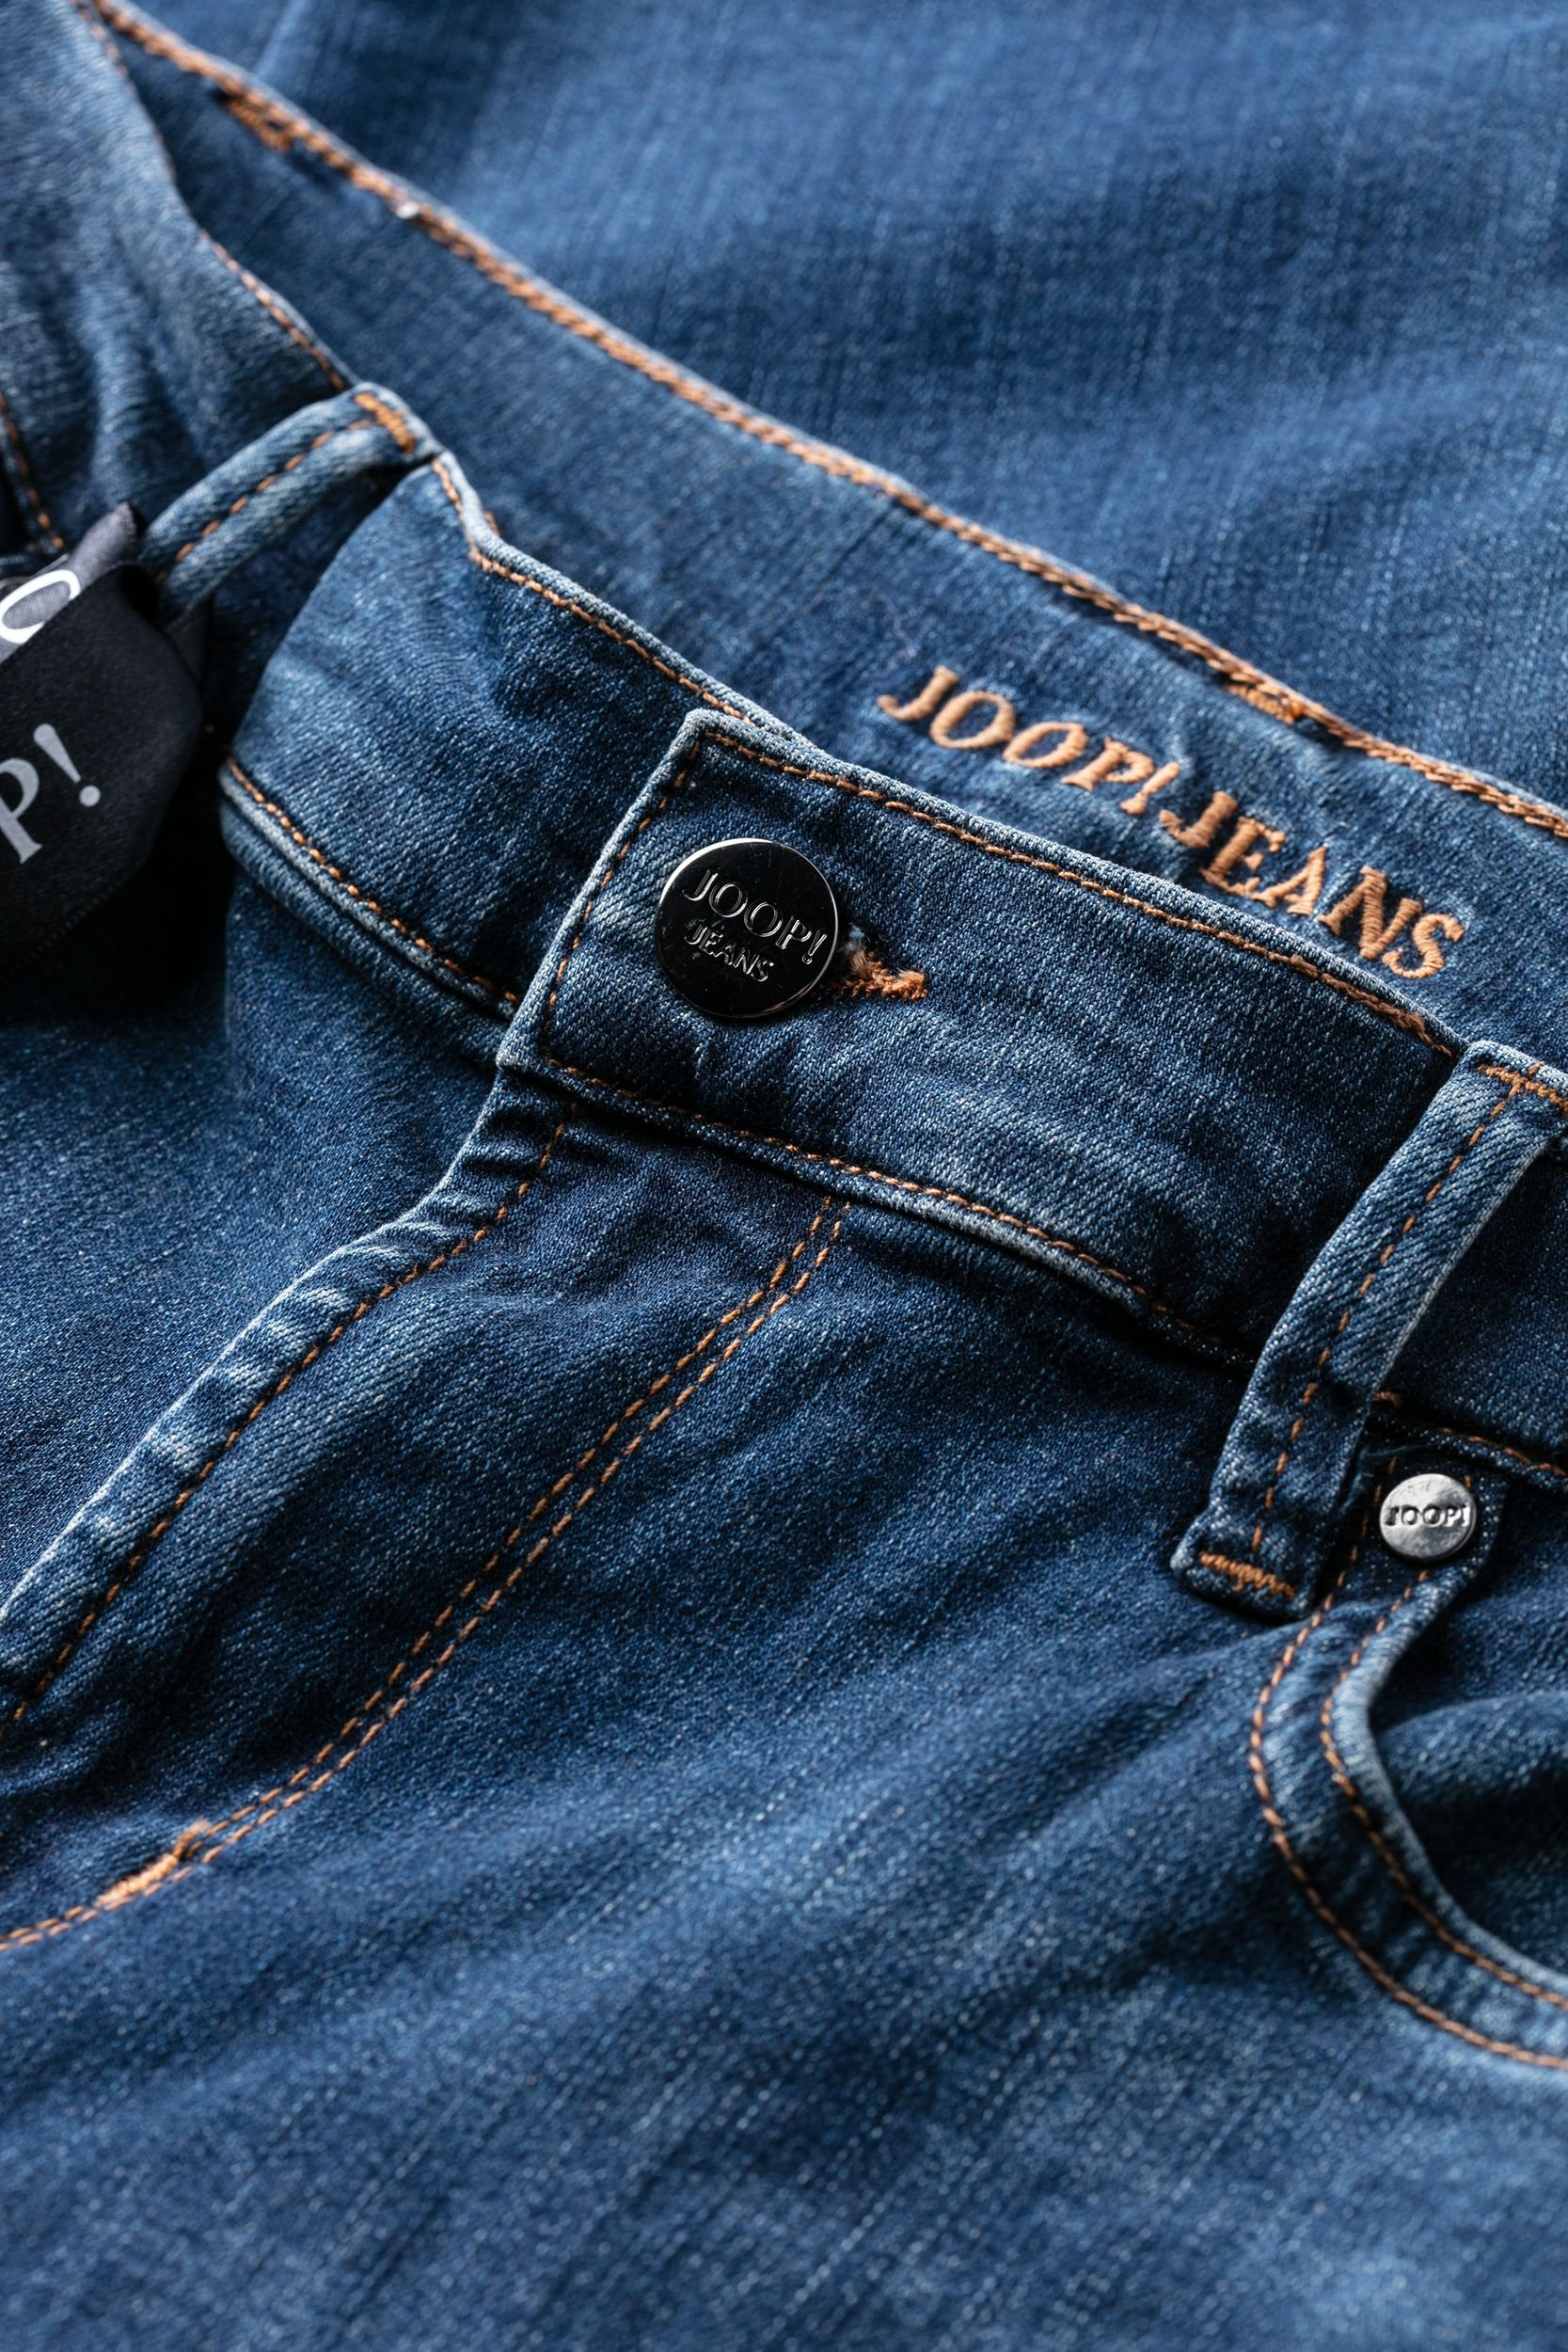 Joop Slim-Jeans Sol in dark blue washed